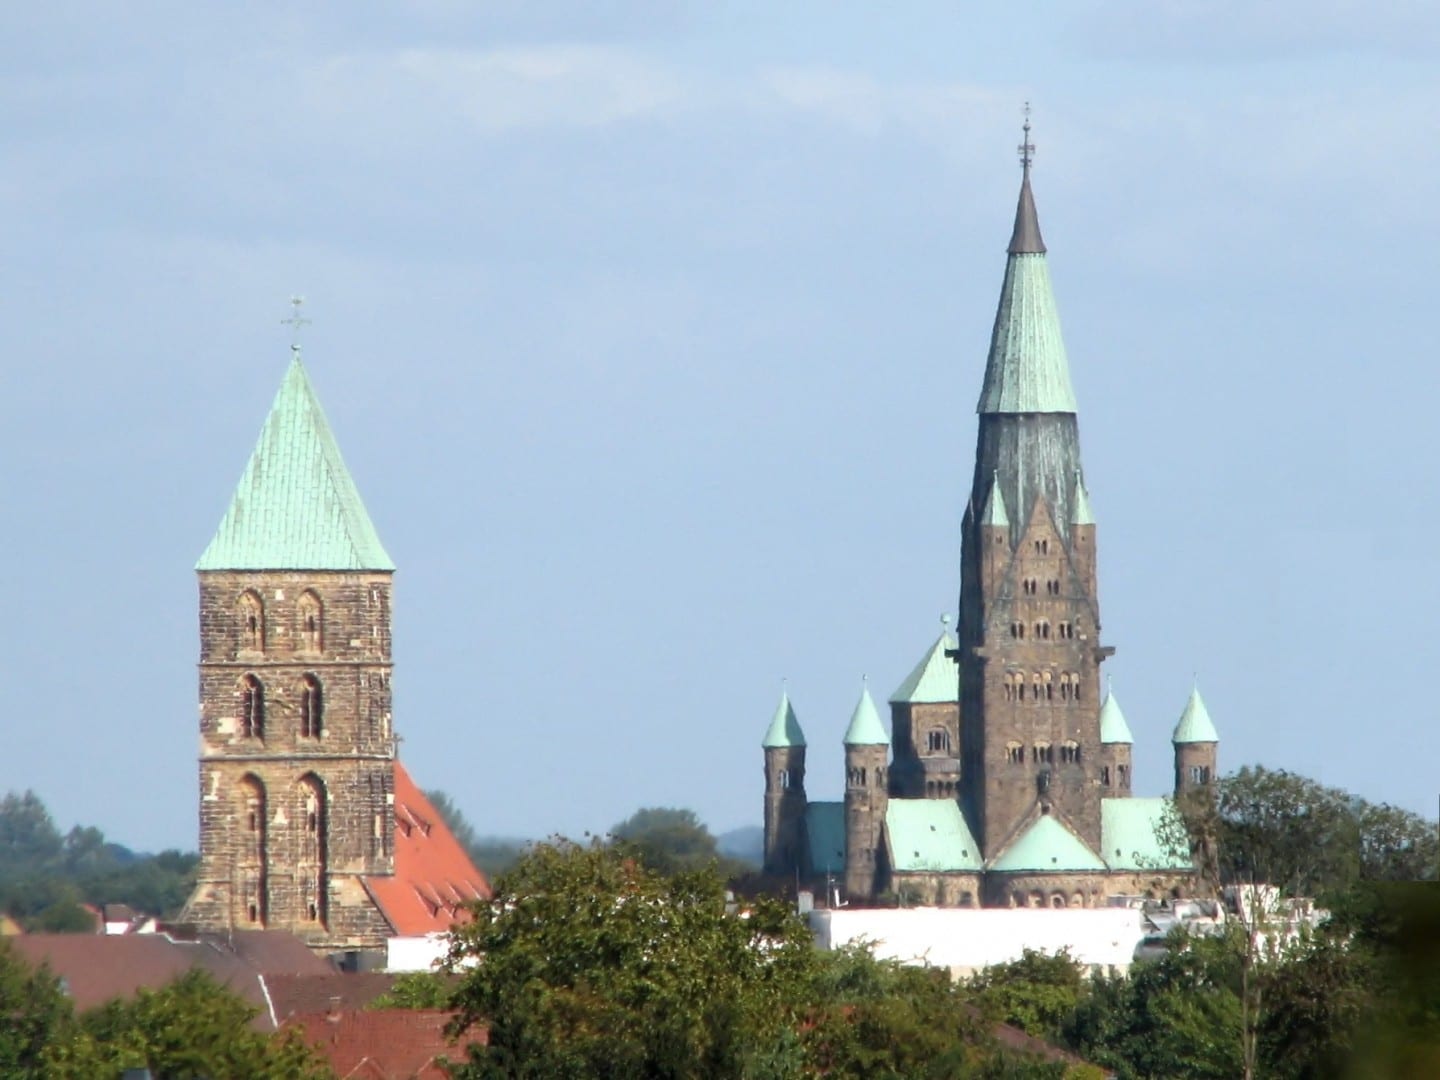 La iglesia de San Dionisio (izquierda) y la basílica de San Antonio (derecha) Rheine Alemania